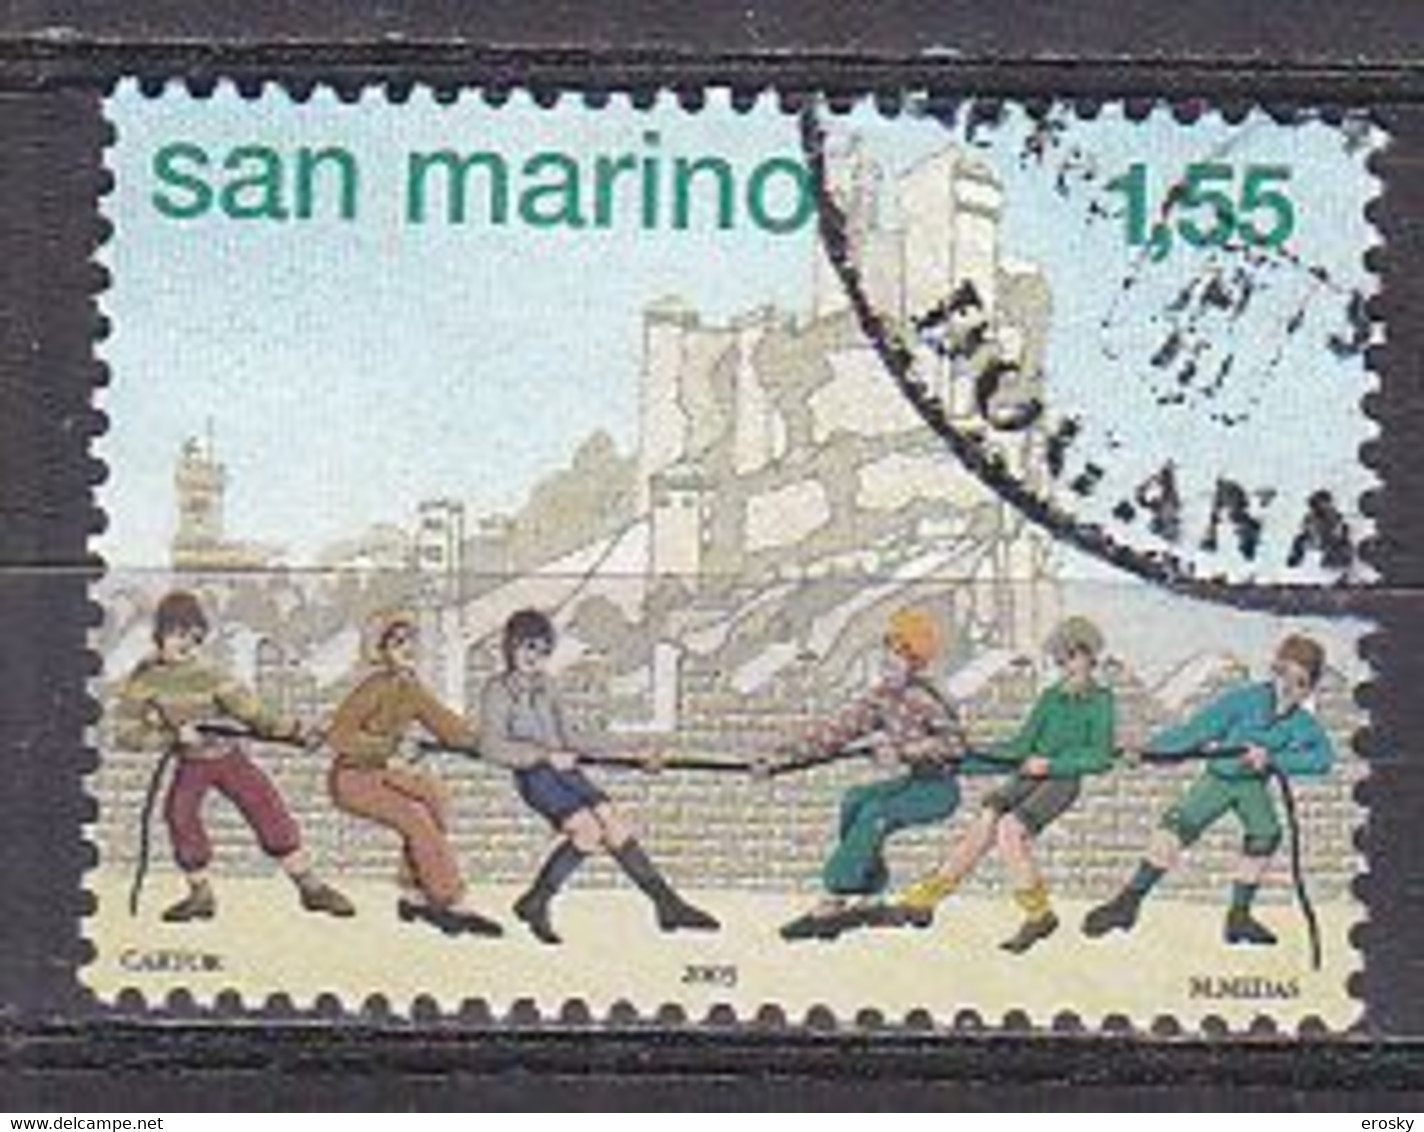 Y9006 - SAN MARINO Ss N°1953 - SAINT-MARIN Yv N°1911 - Gebraucht